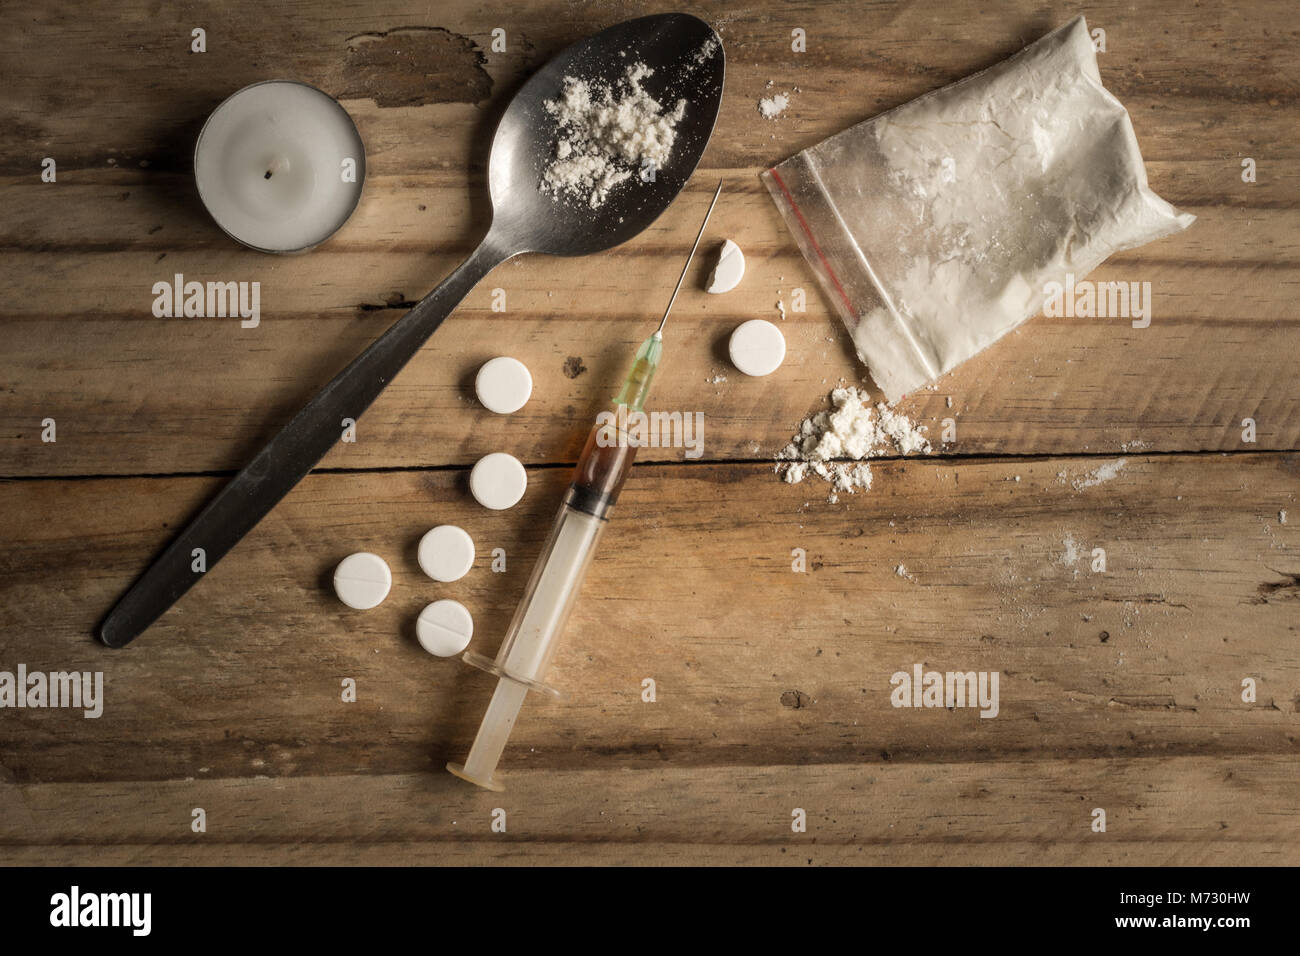 Les drogues, en poudre, une cuillère, et tablettes sur fond de bois rustique. Concept de la toxicomanie et de l'espace pour texte d'arrière-plan Banque D'Images